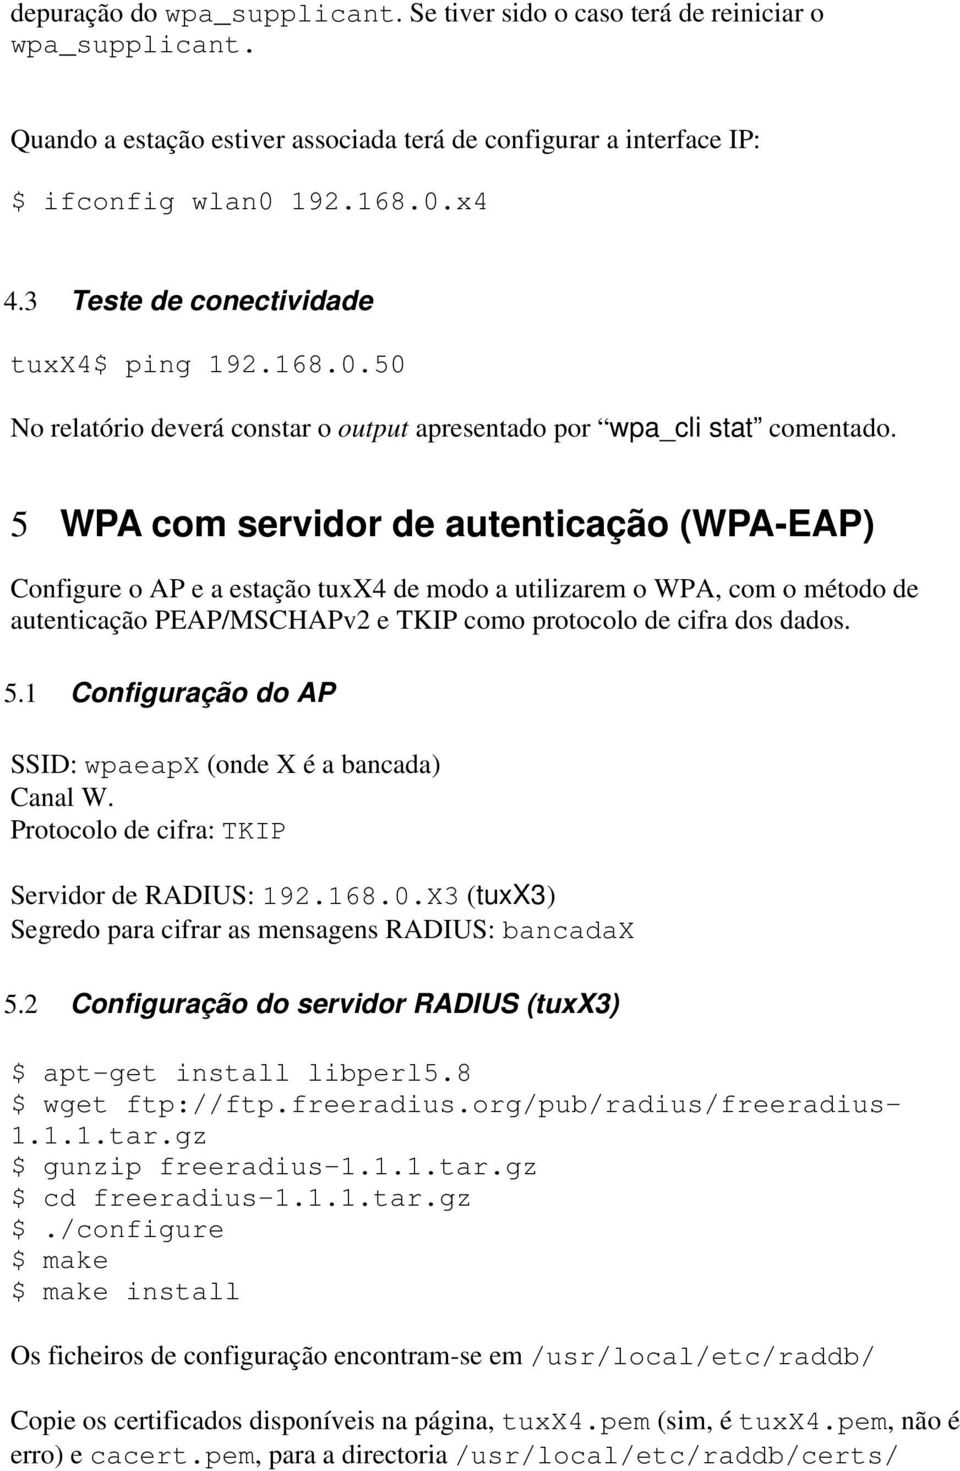 5 WPA com servidor de autenticação (WPA-EAP) Configure o AP e a estação tuxx4 de modo a utilizarem o WPA, com o método de autenticação PEAP/MSCHAPv2 e TKIP como protocolo de cifra dos dados. 5.